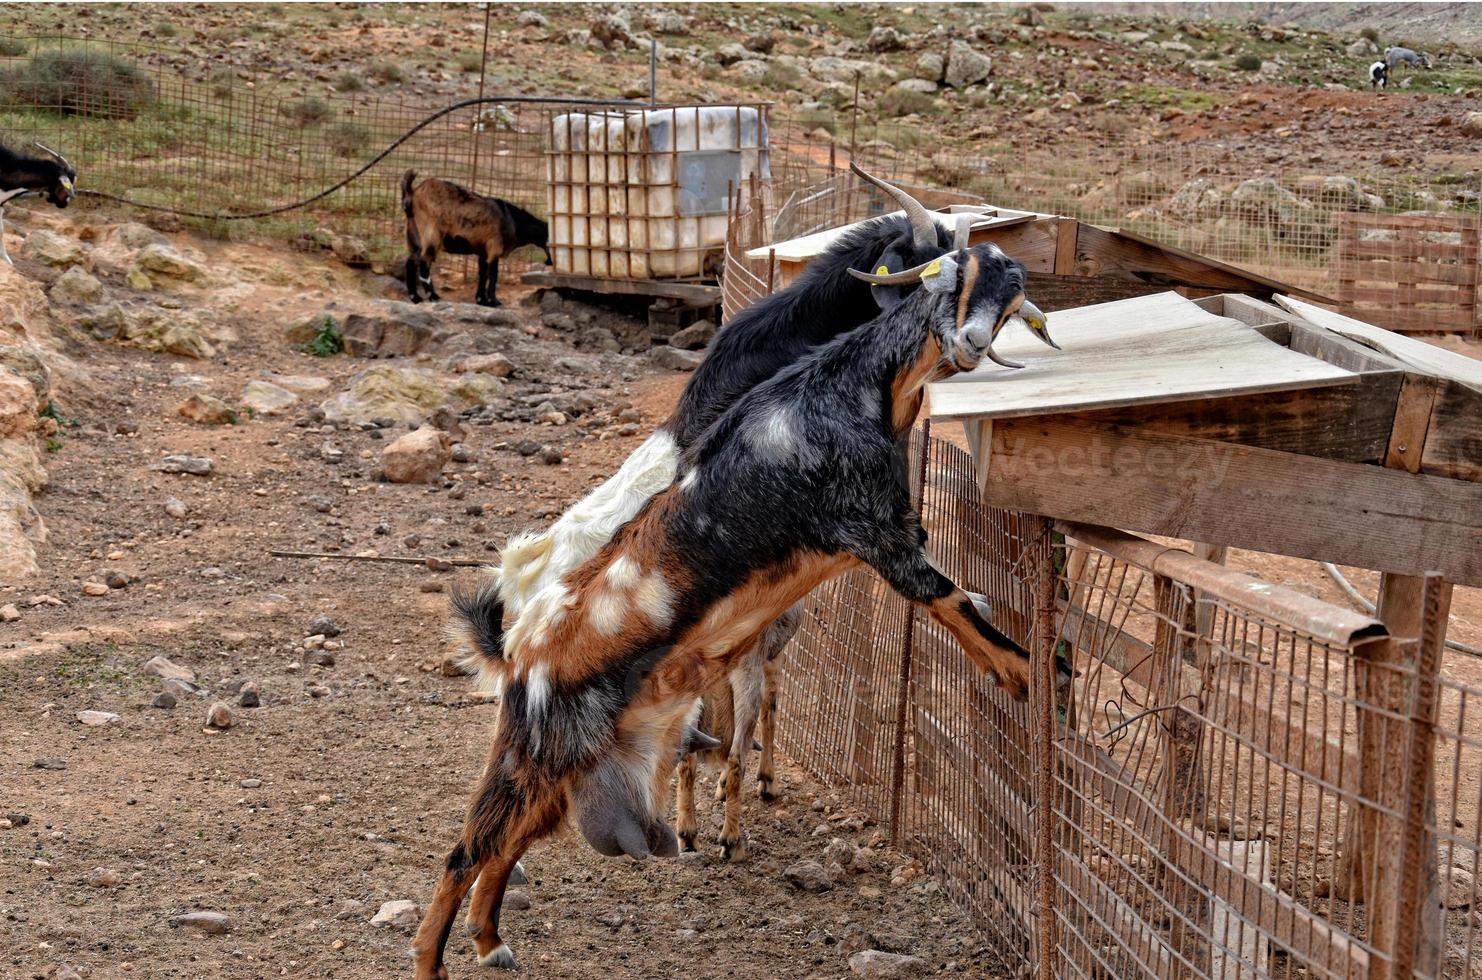 paisible apprivoiser chèvre animaux sur une ferme sur canari île fuertaventra photo